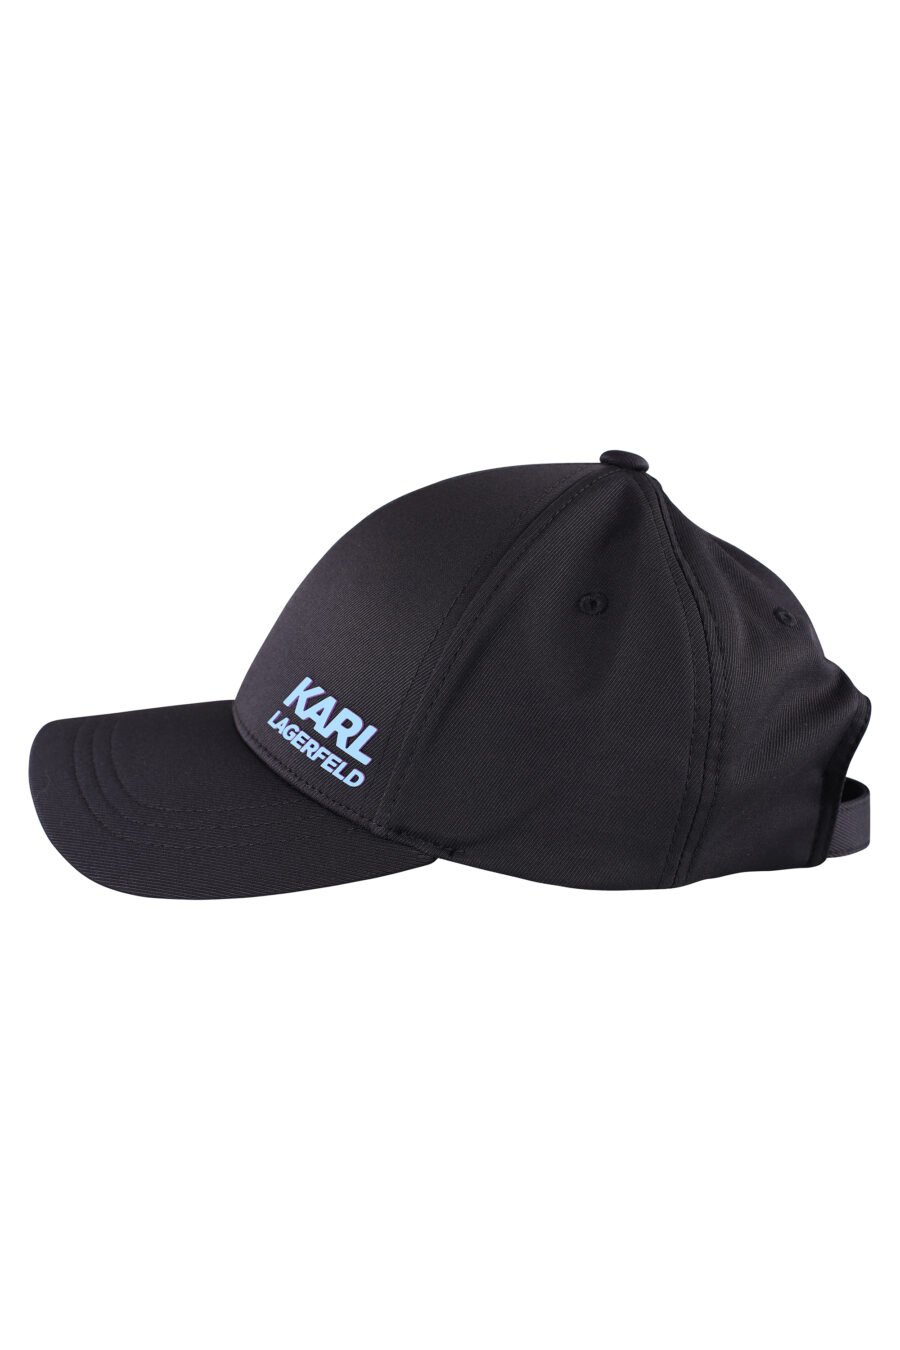 Gorra negra con logo azul cielo - IMG 8528